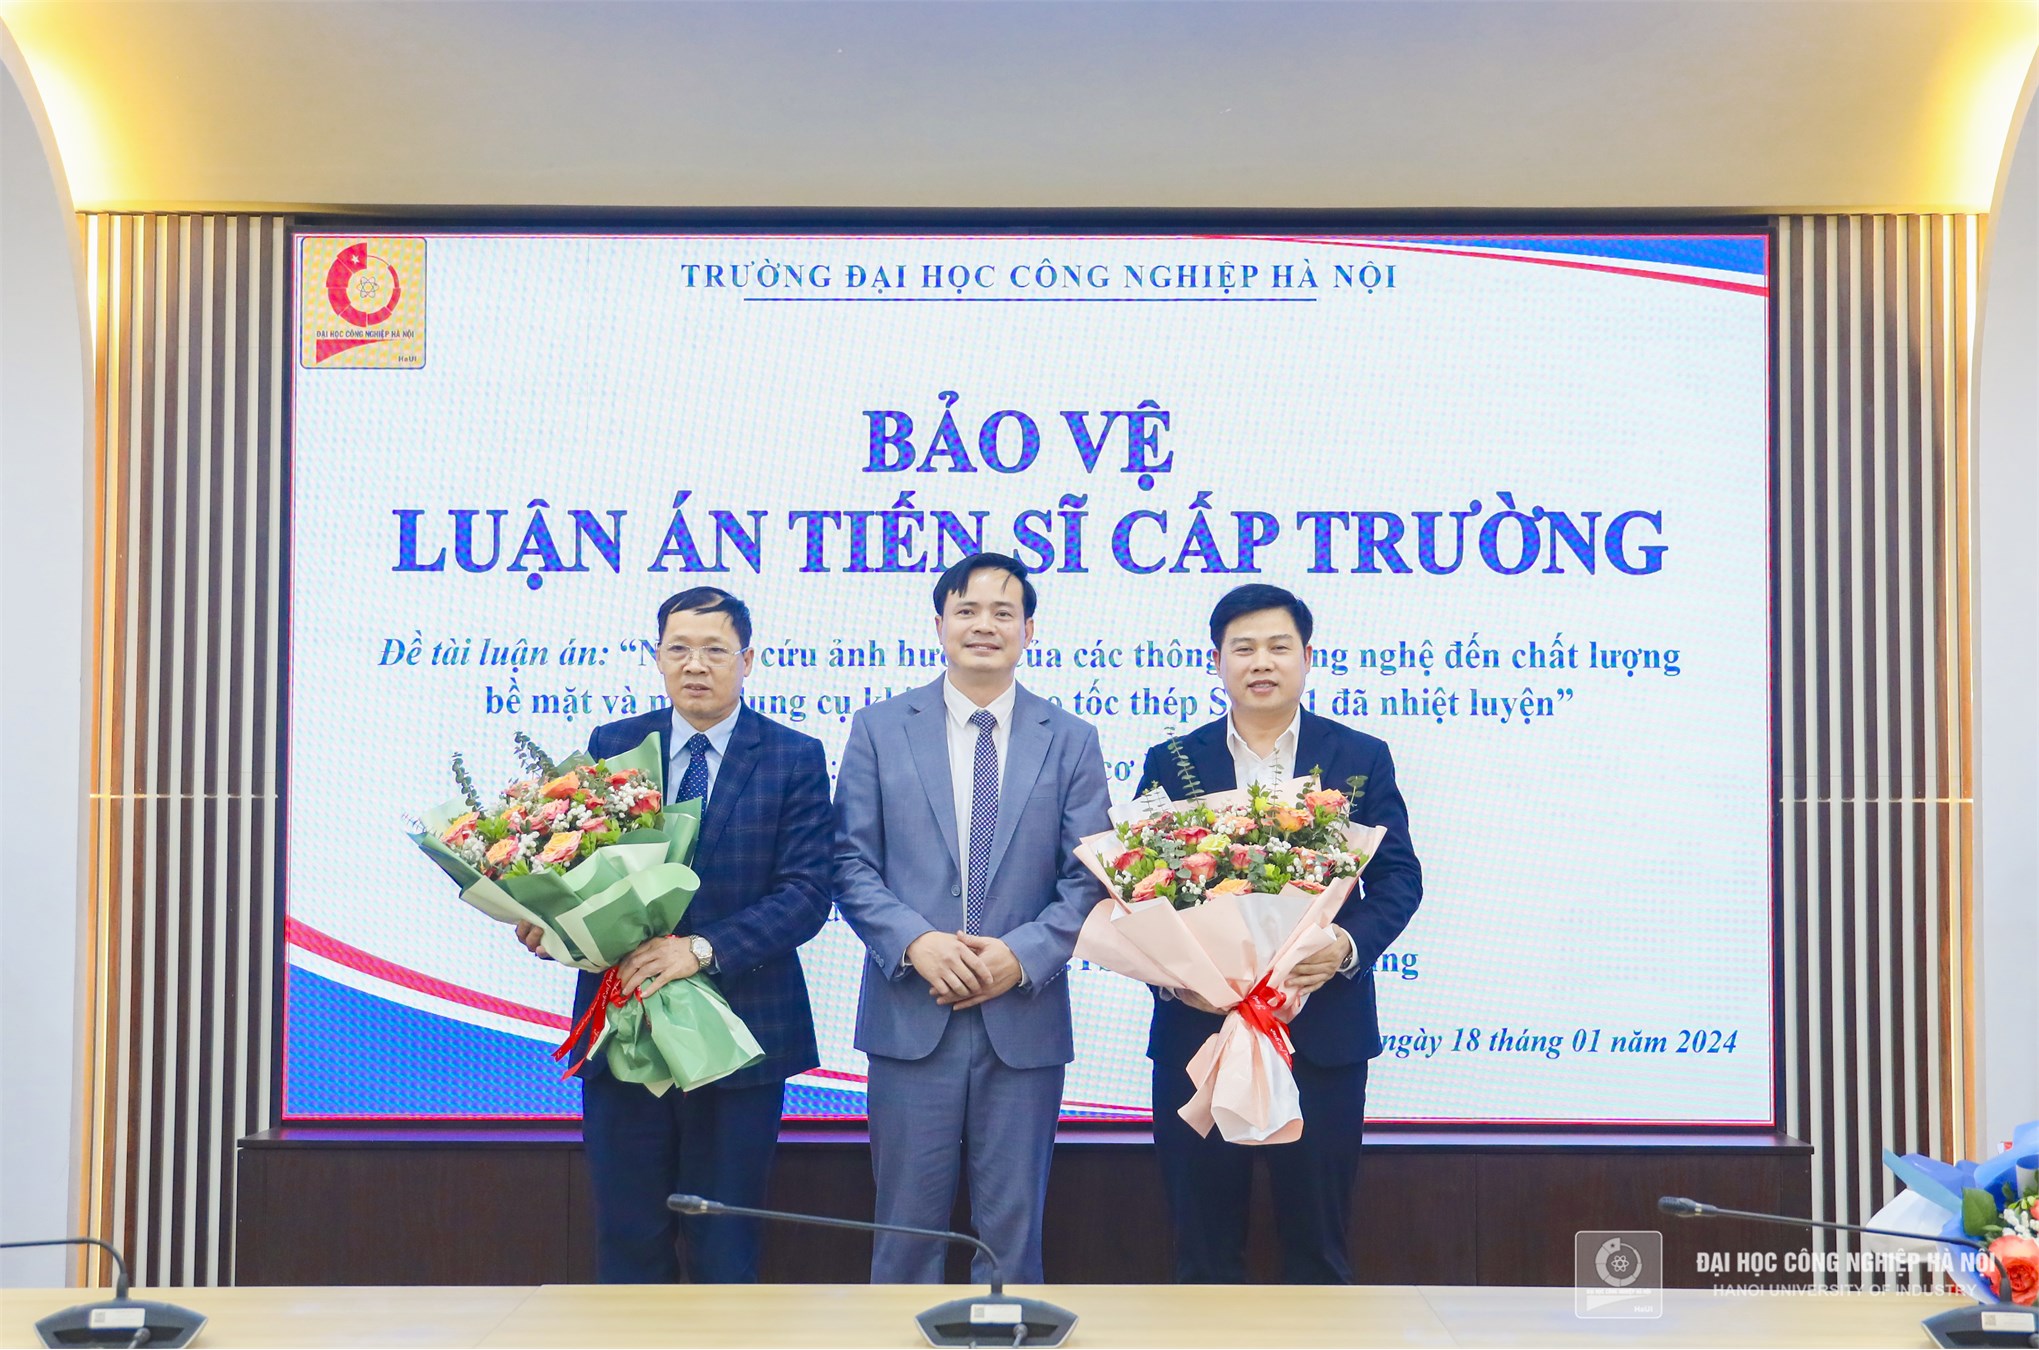 Trường Đại học Công nghiệp Hà Nội tổ chức bảo vệ luận án tiến sĩ cấp trường cho NCS Lê Thế Hưng, chuyên ngành Kỹ thuật cơ khí.